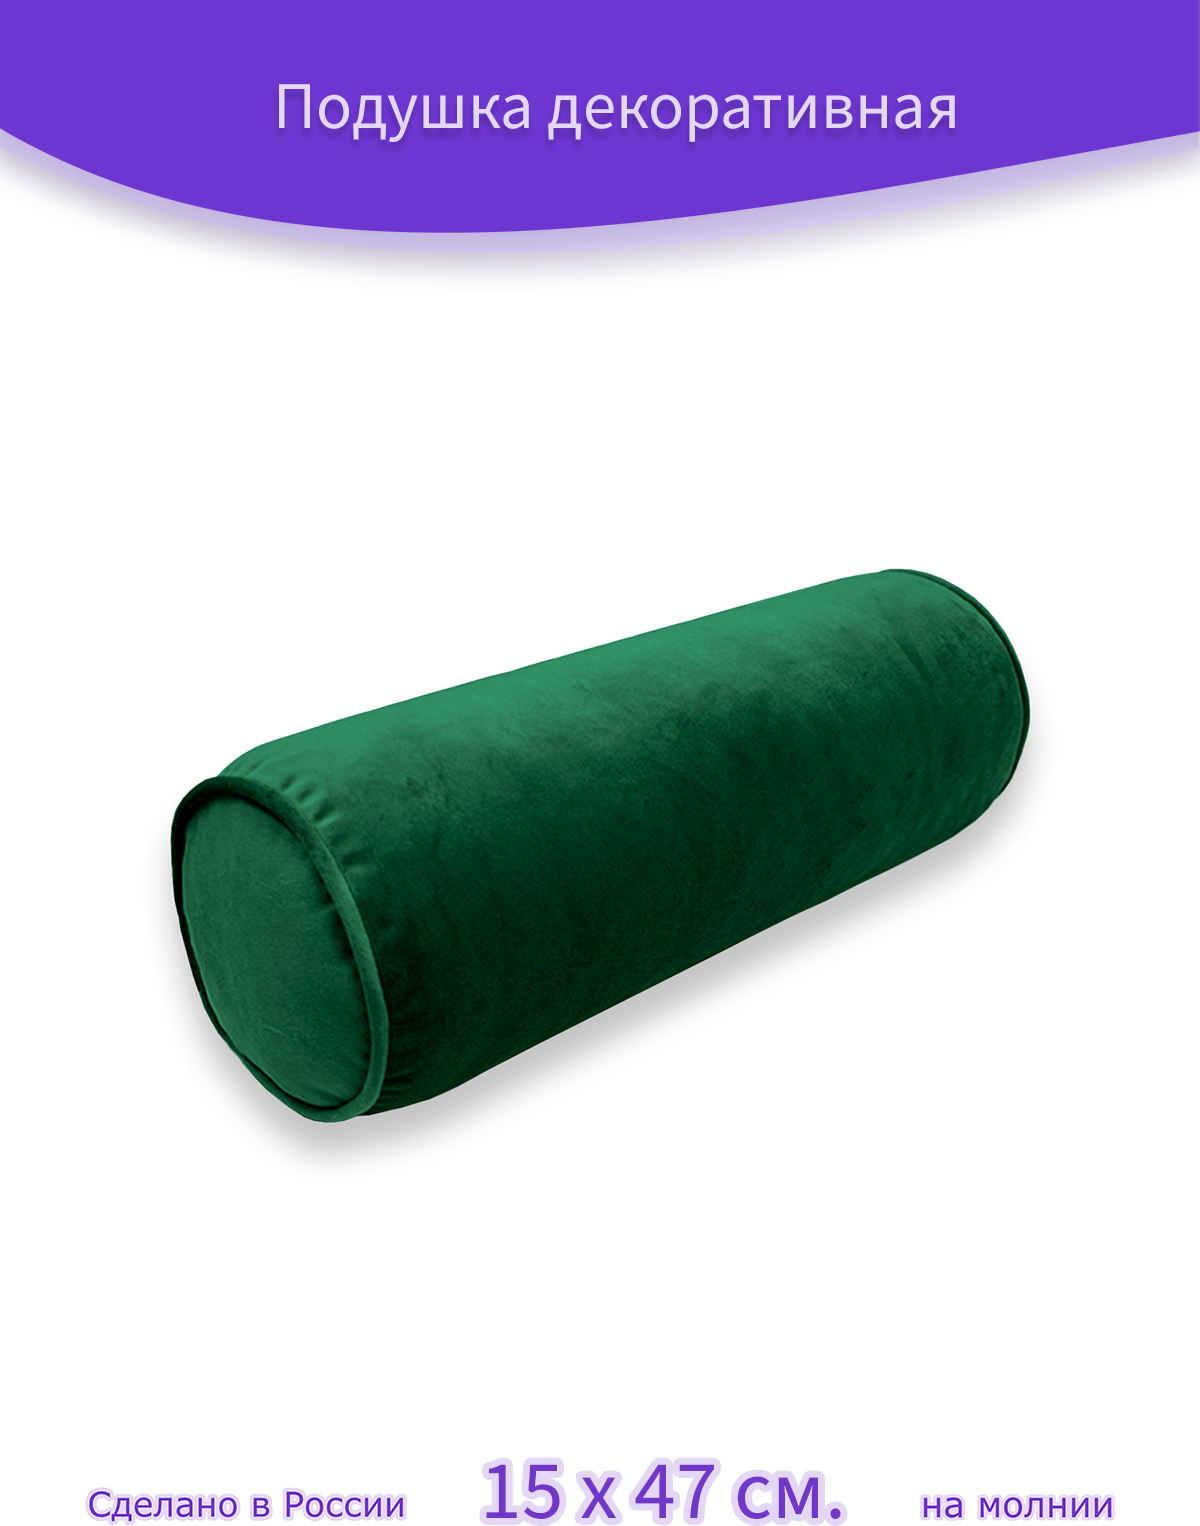 Декоративная подушка - валик "Бархат Изумрудный", 15 х 47 см, темно-зеленый